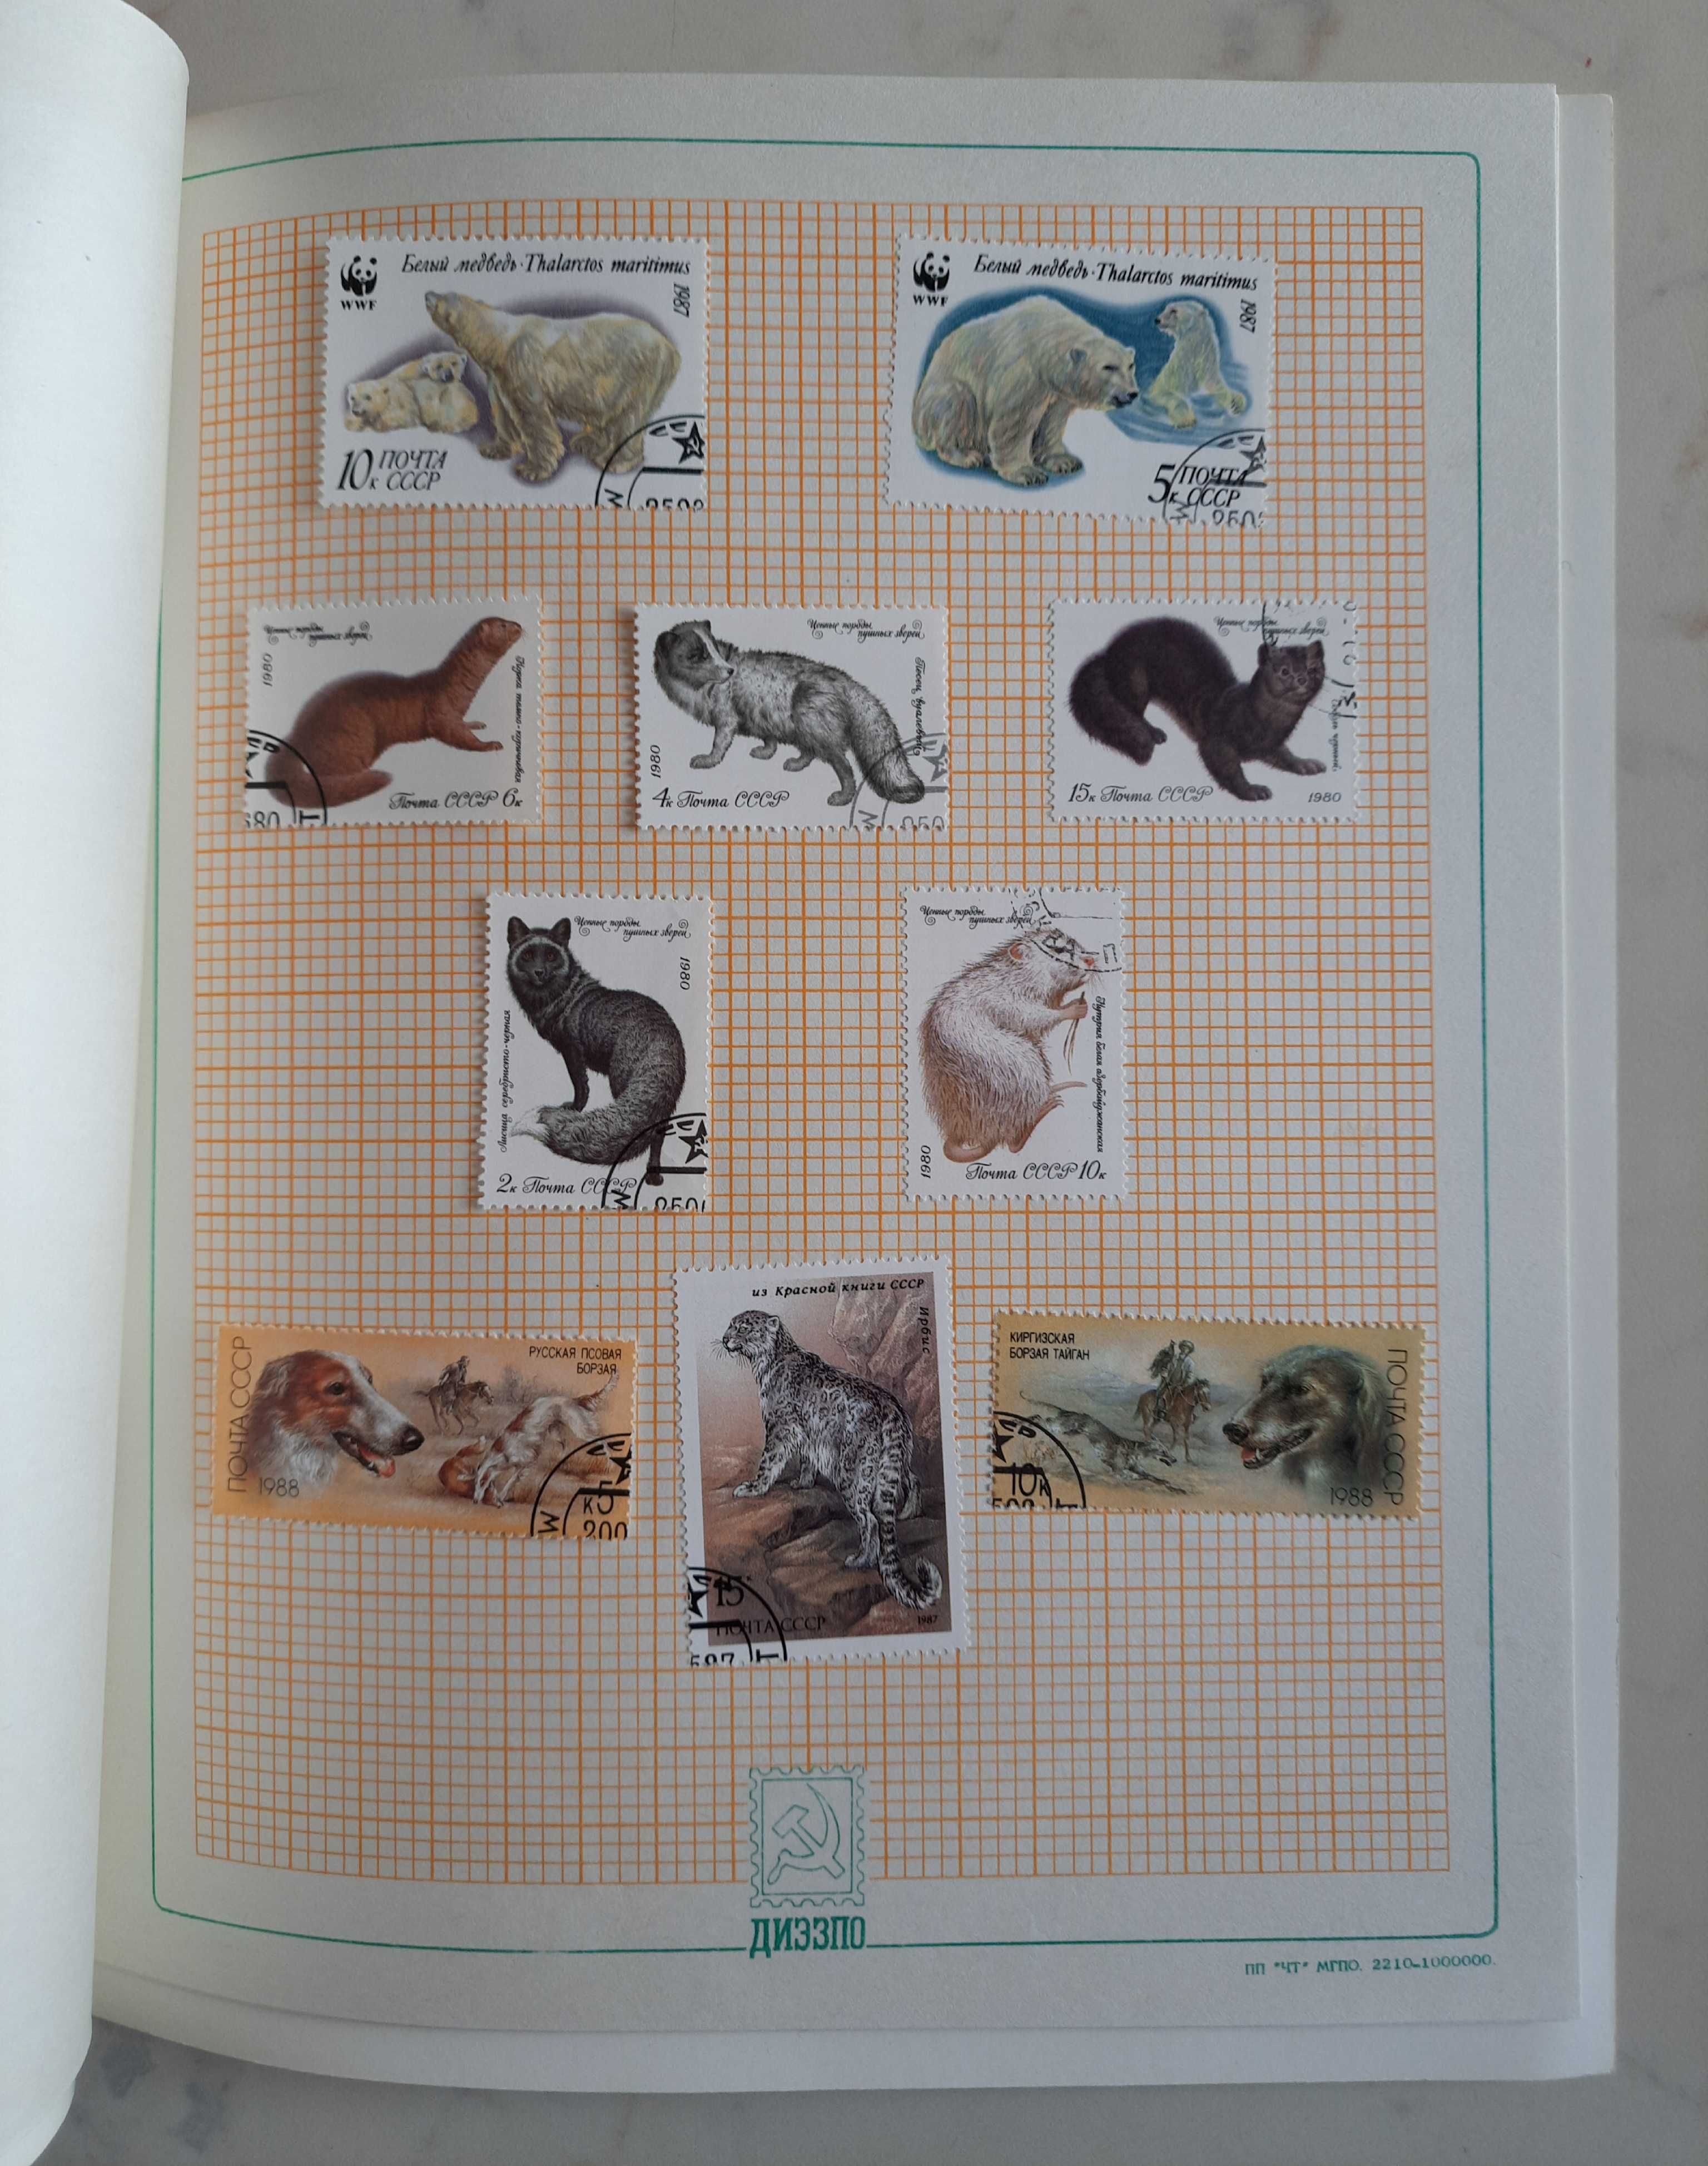 100 znaczków: flora i fauna w zeszycie tematycznym